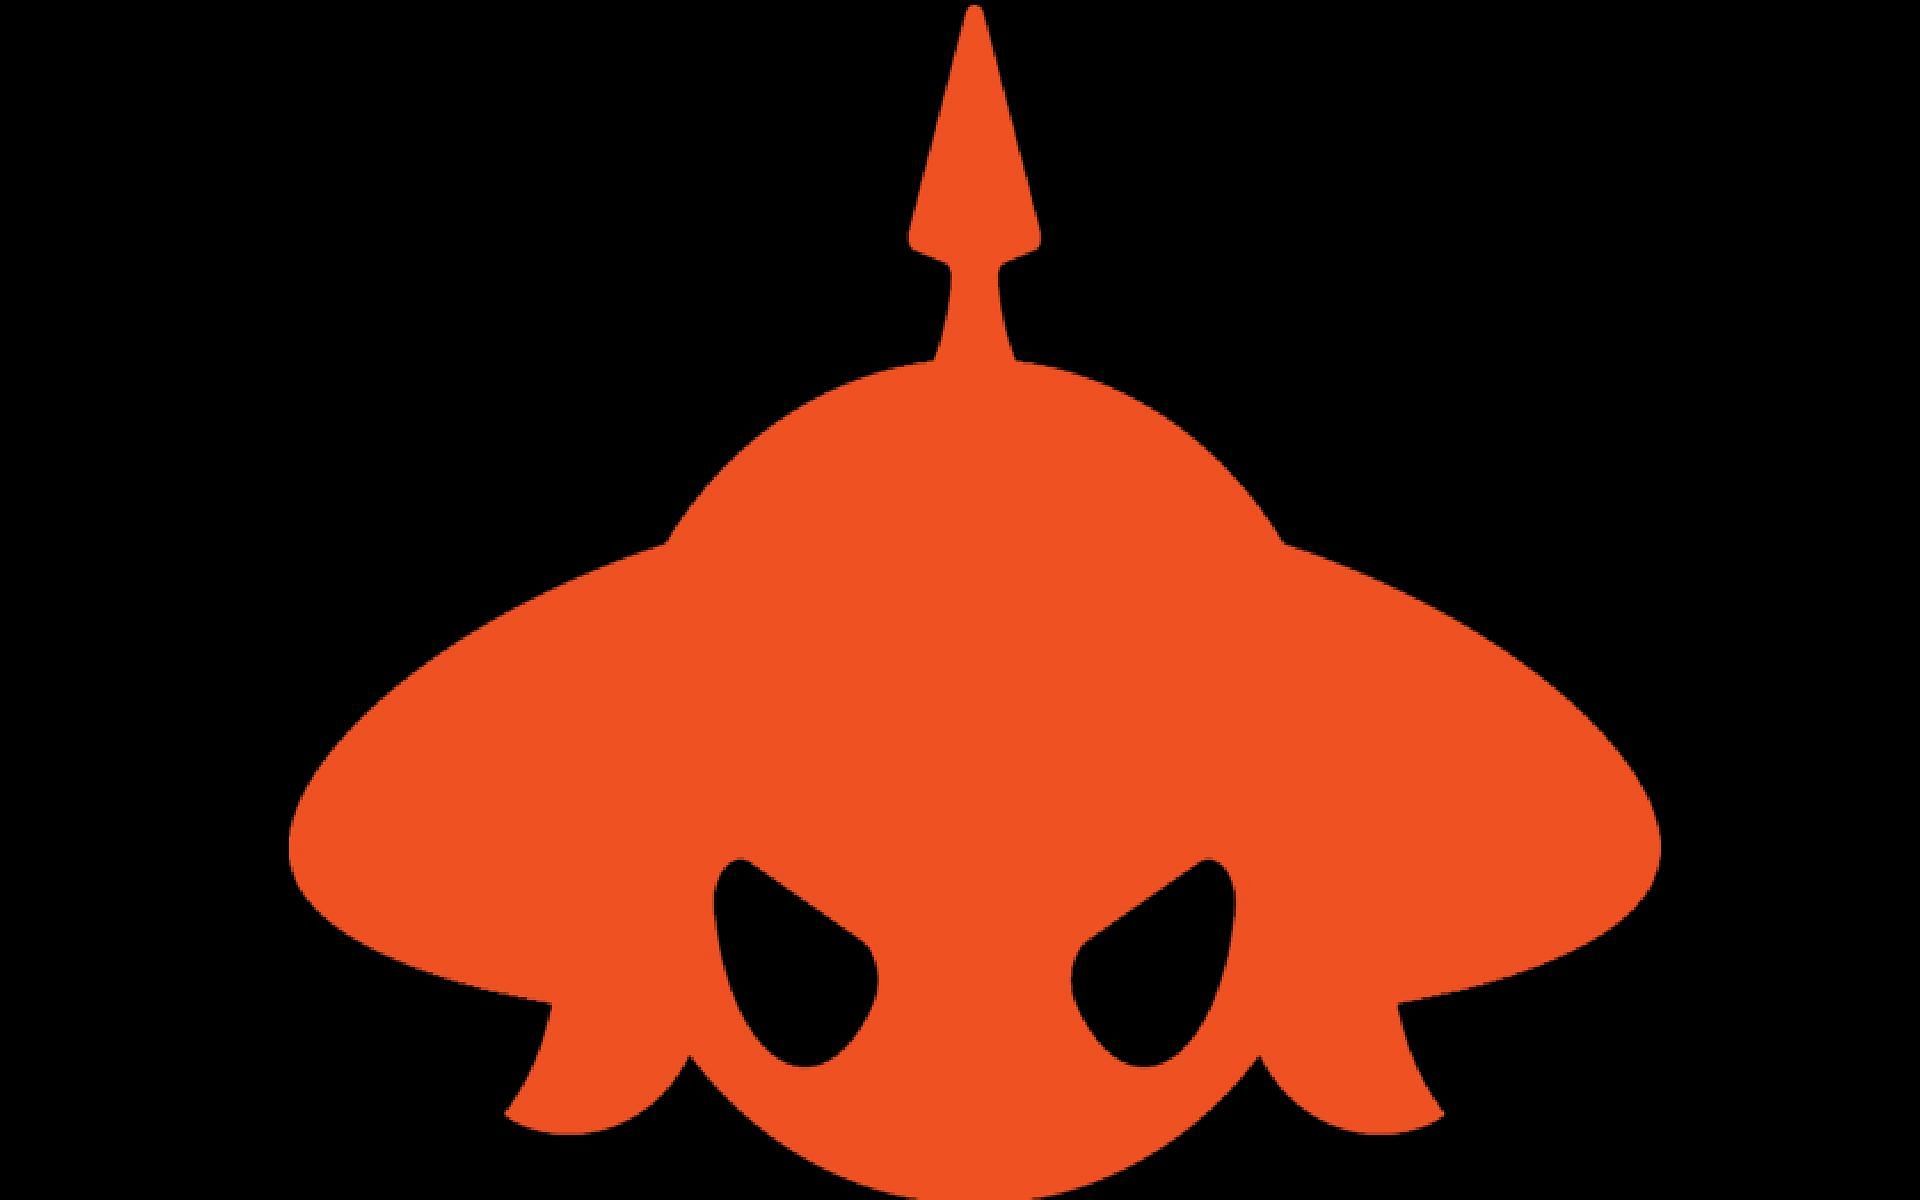 Burmese Ghouls team logo (Image via Burmese Ghouls)